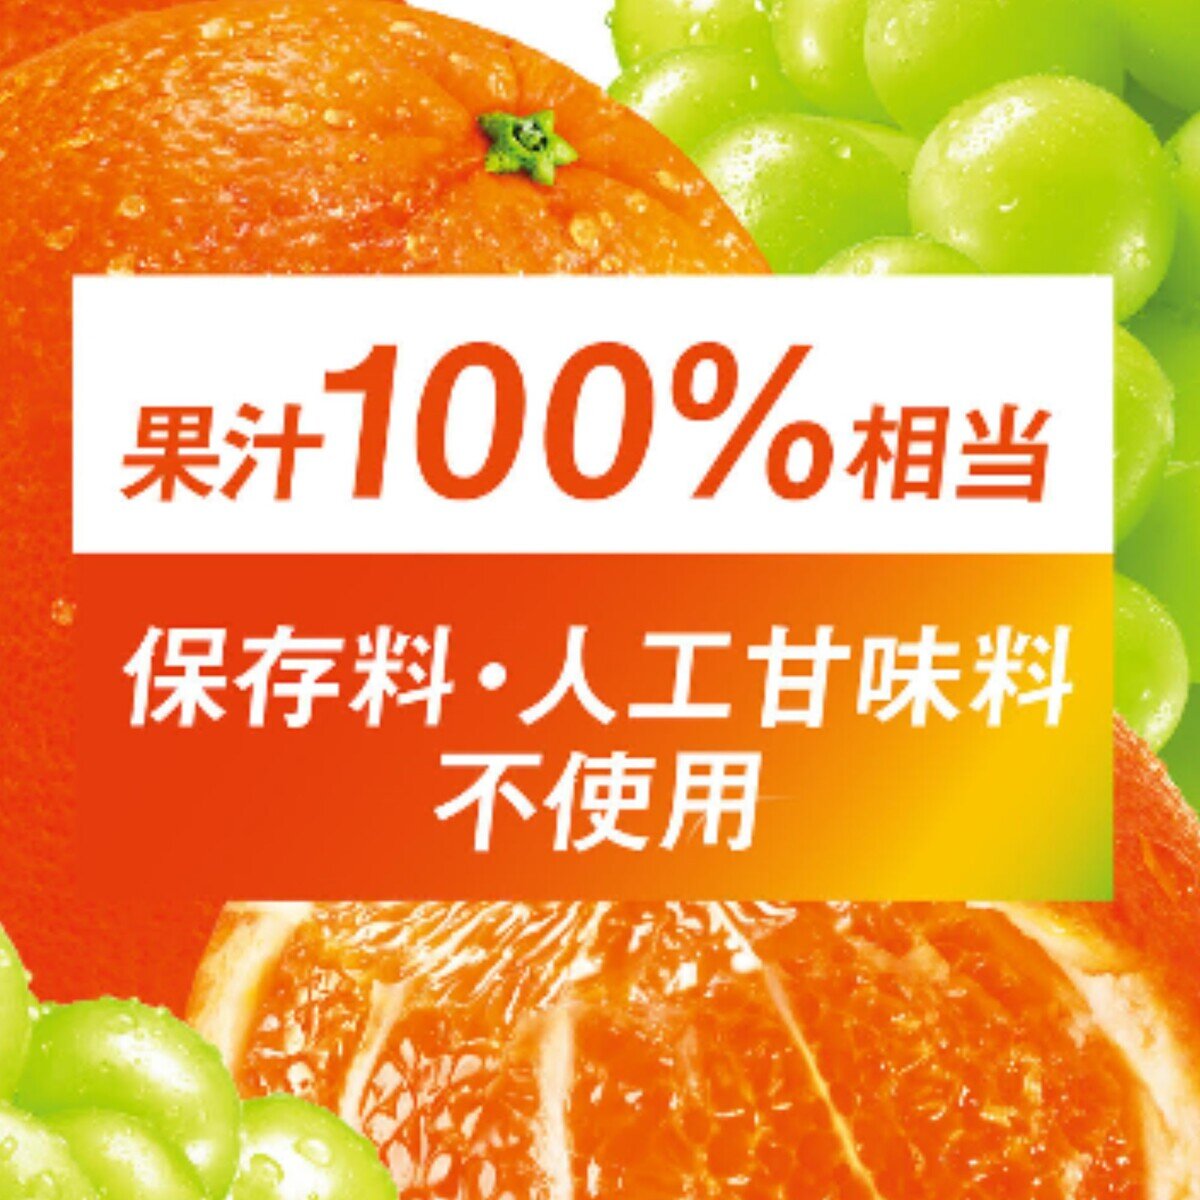 トロピカーナ 100% チャージオレンジ 160g x 30個